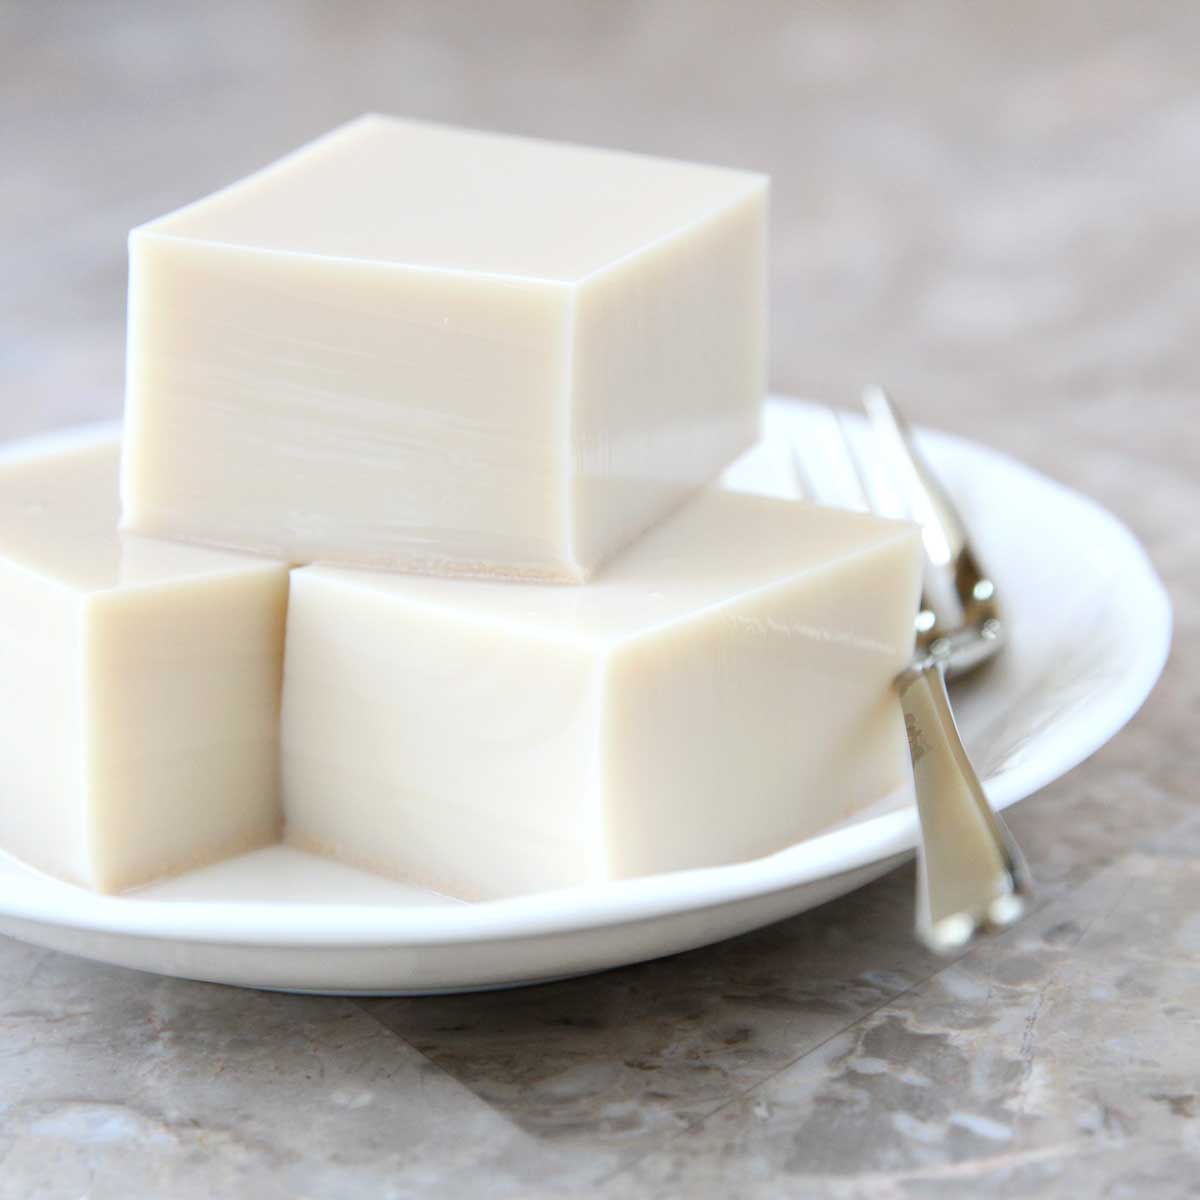 Oat Milk Jello (Made in the Microwave) - Zero-Sugar Whipped Cream